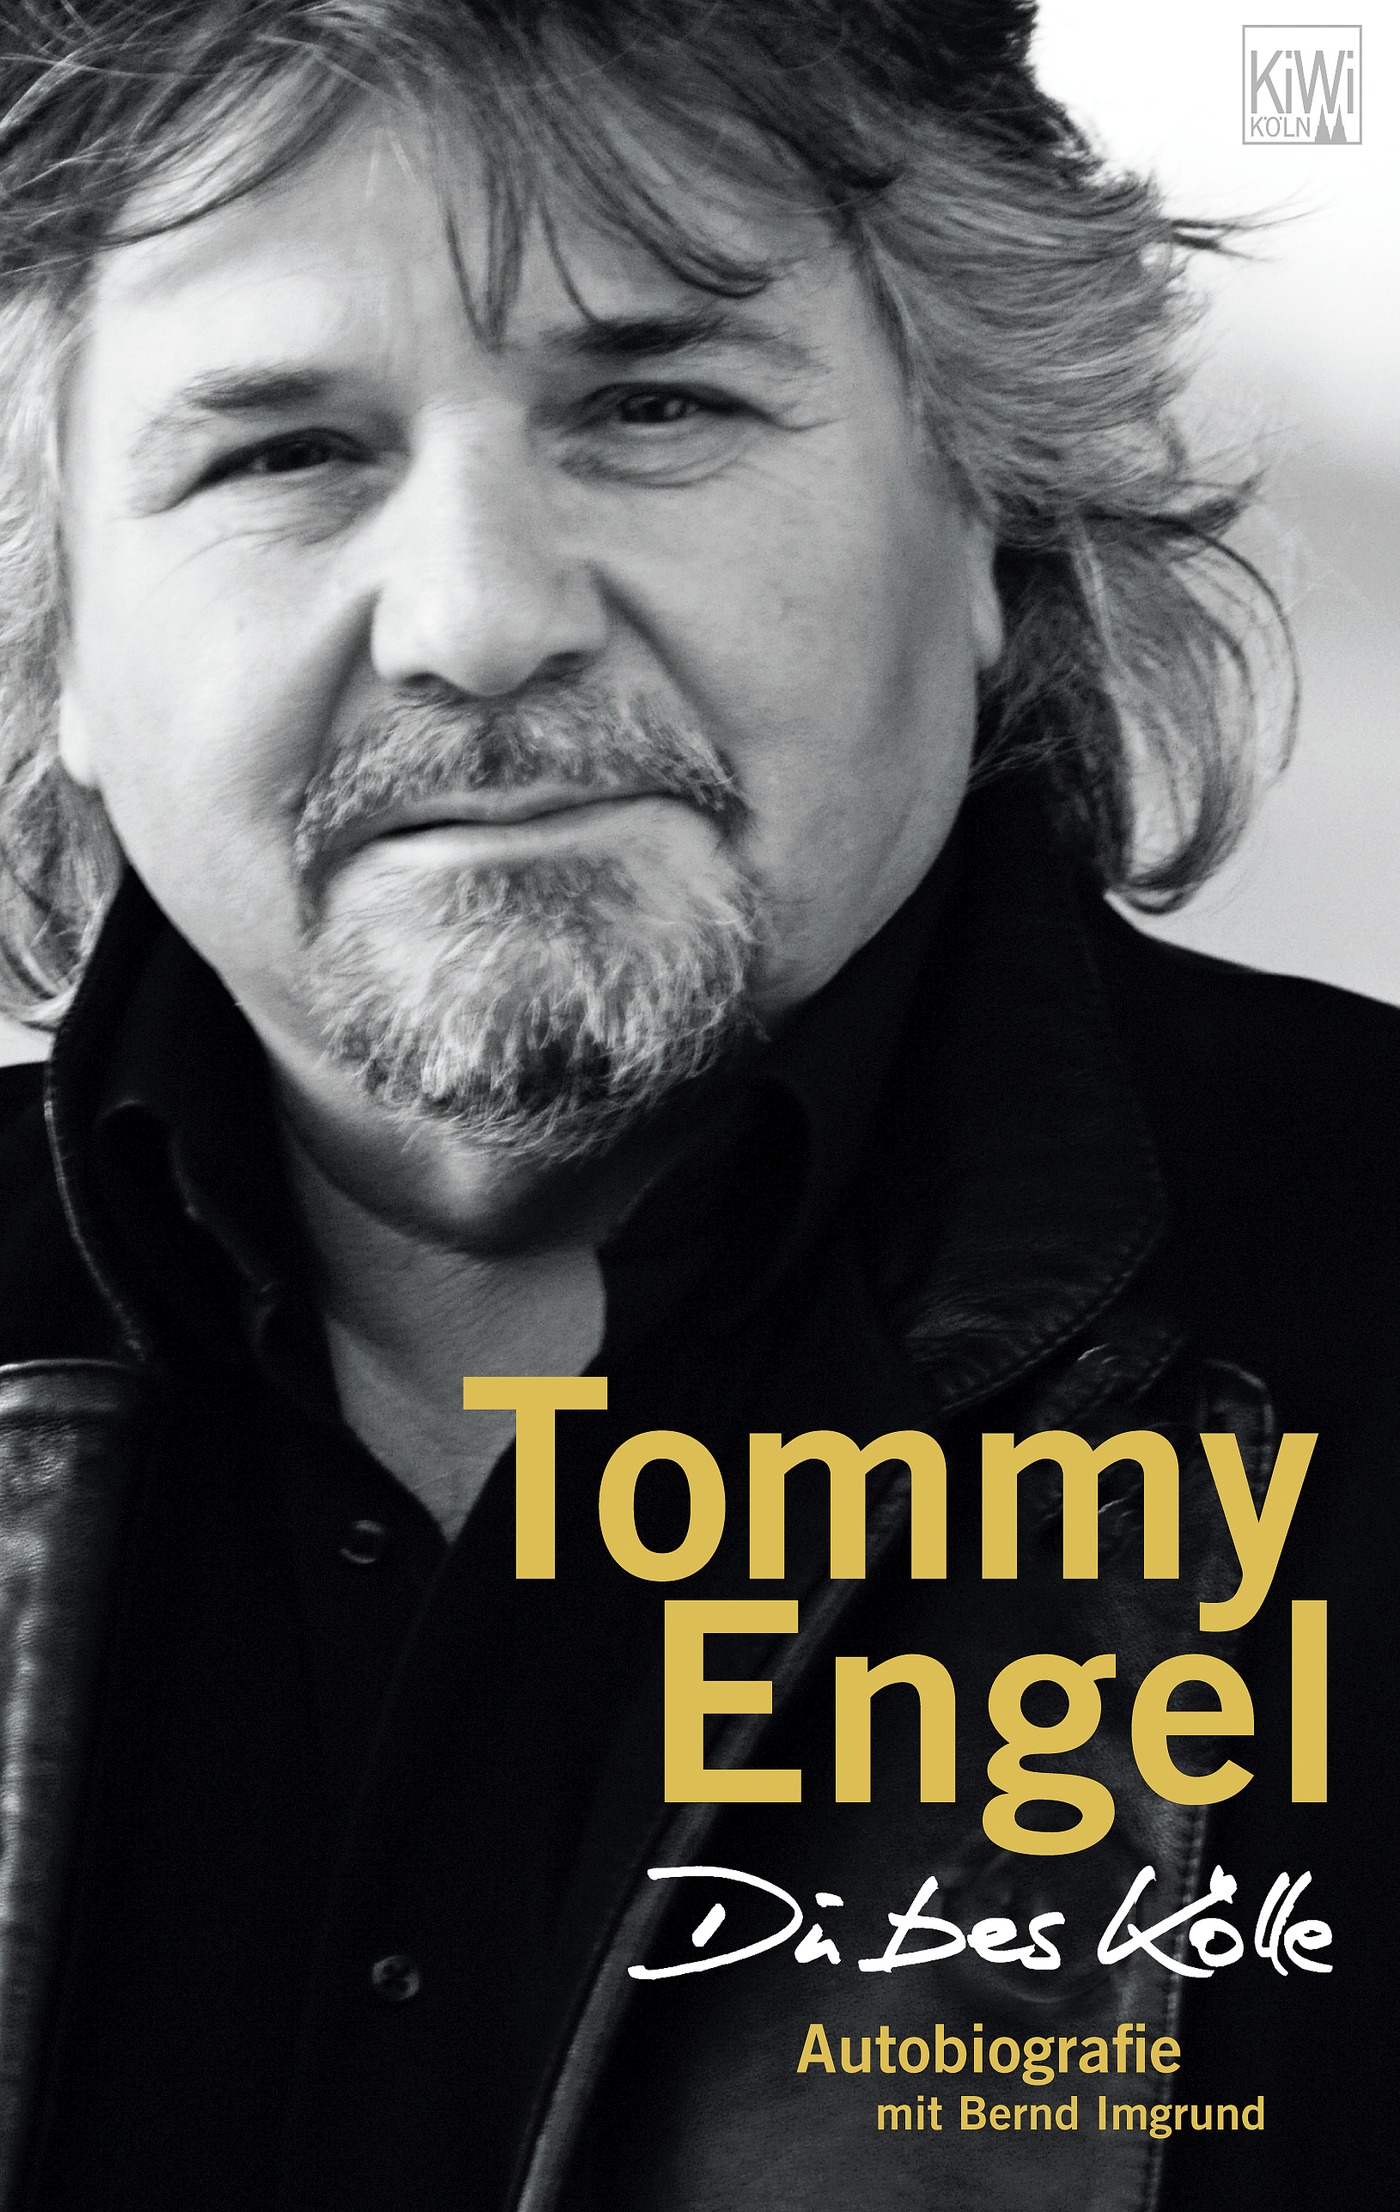 Tommy Engel Du bes Kölle Autobiografie